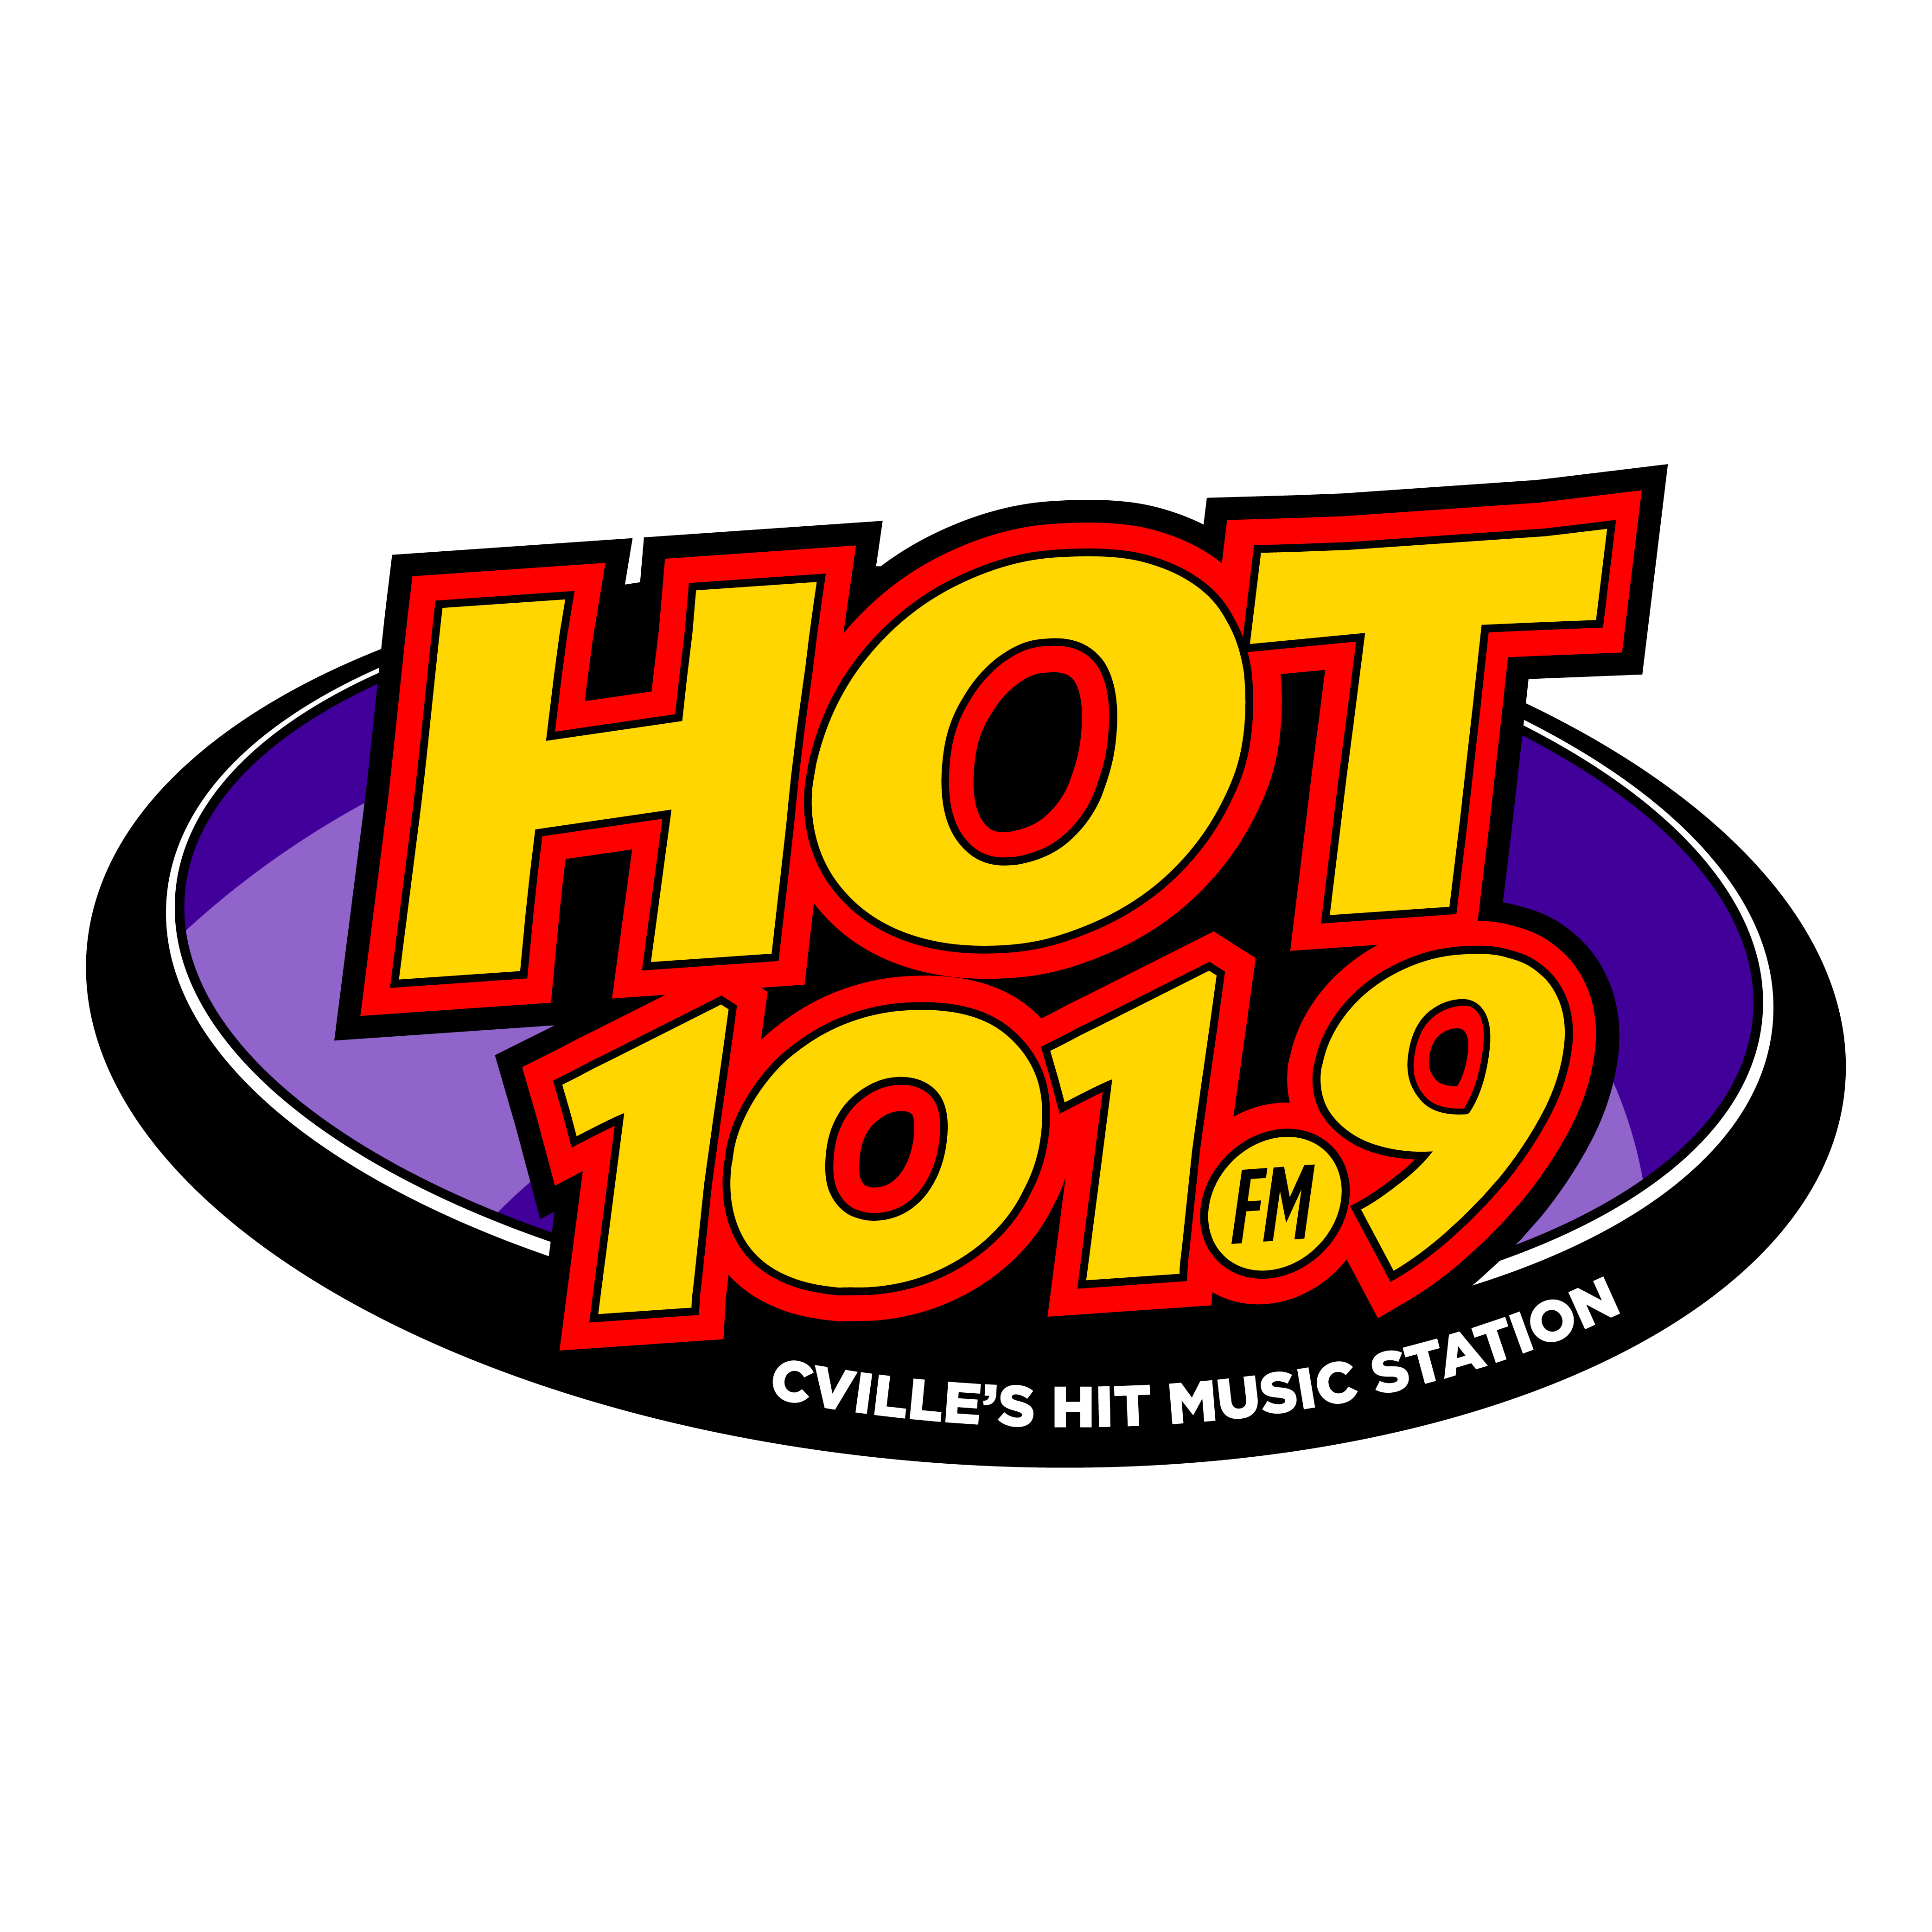 Hot 1019 Cville